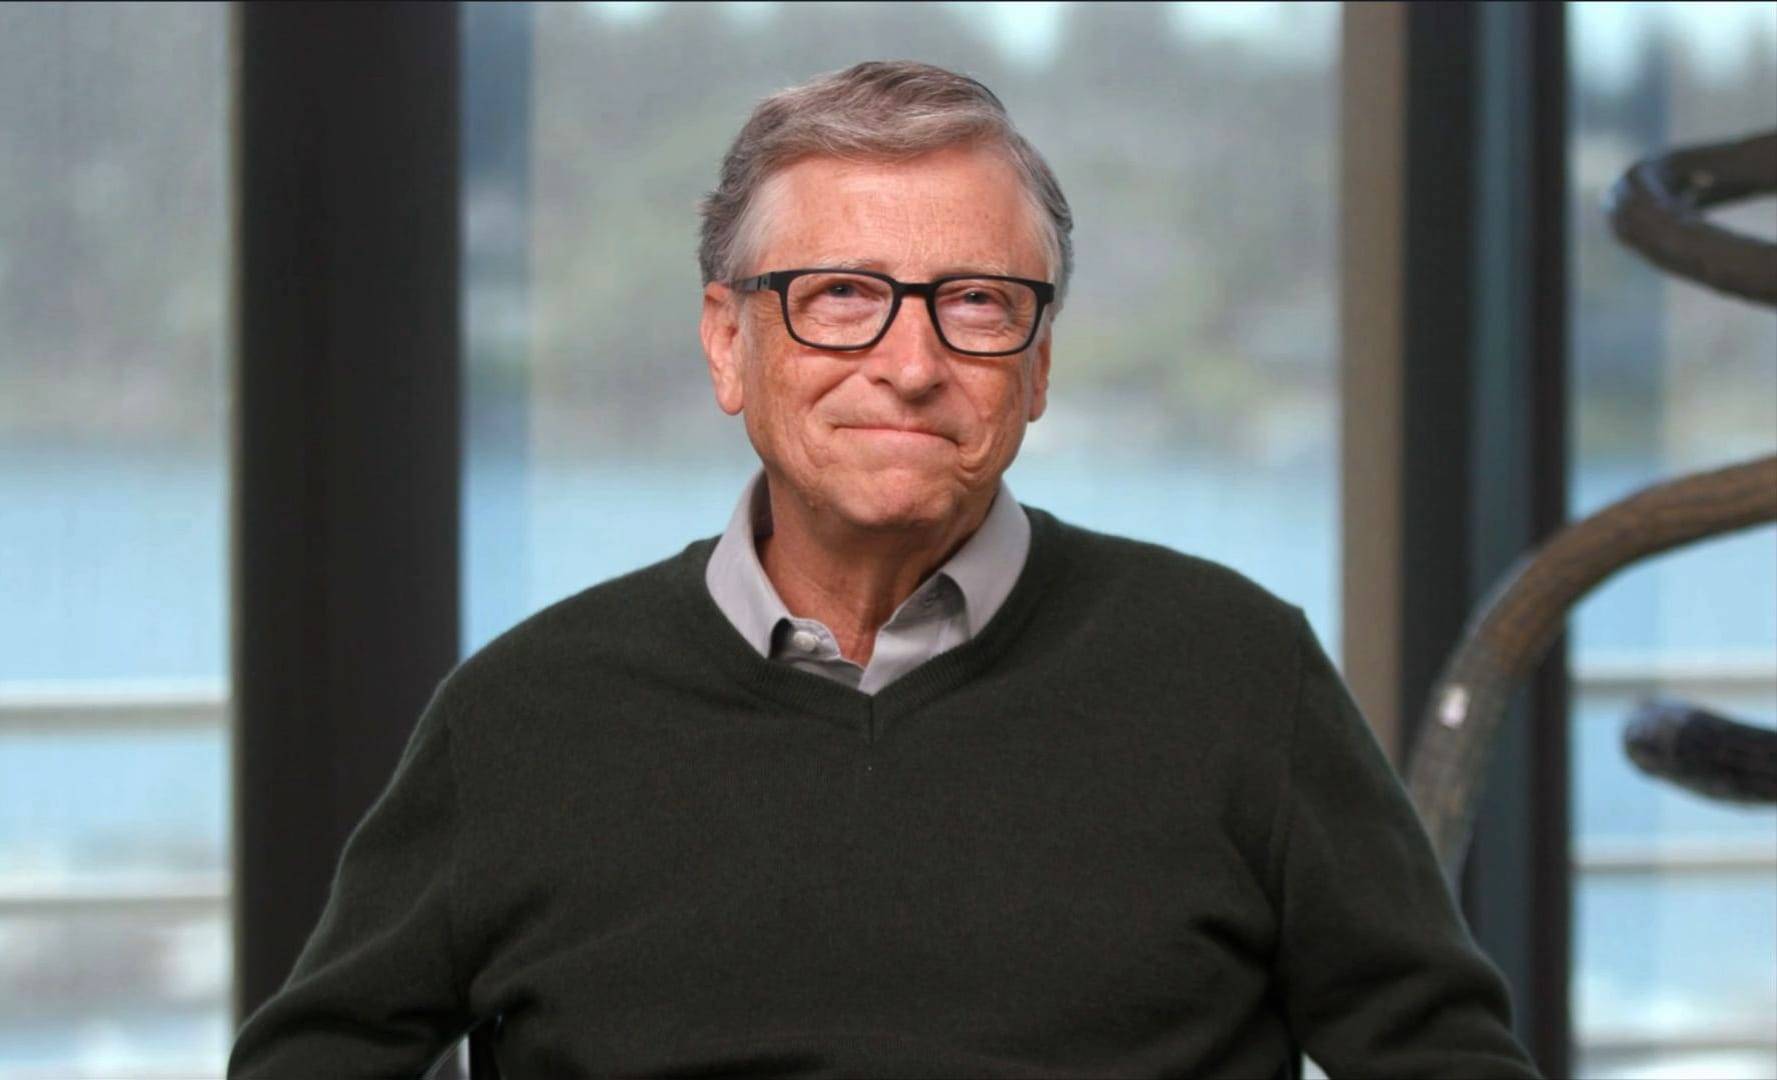 Noi detalii ies la iveală despre căsnicia lui Bill Gates! Bărbatul și-a înșelat soția cu o angajată